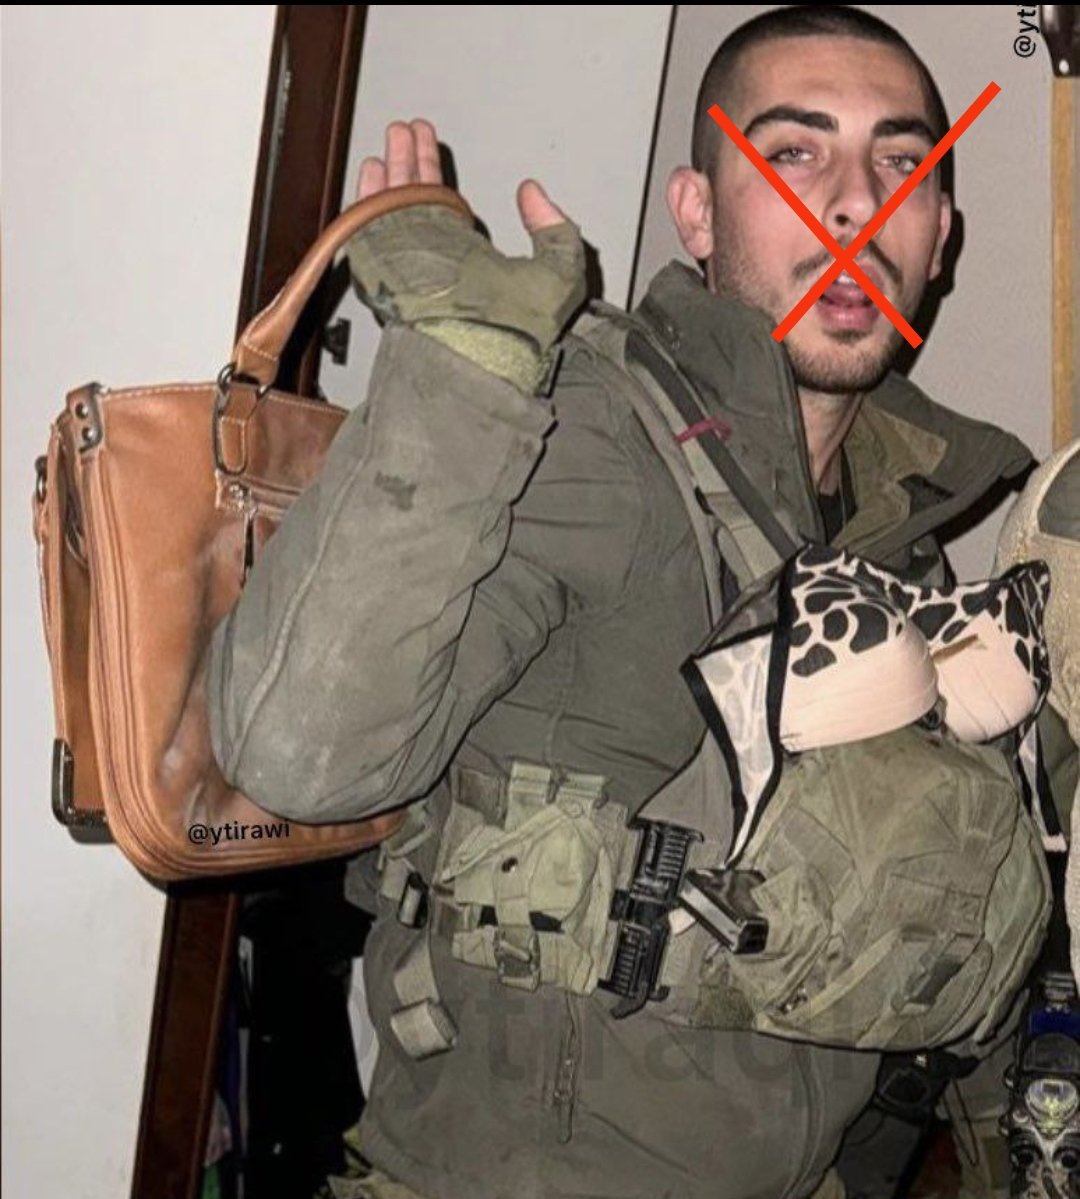 LPG'li ahlaksız Yüzbaşı Aaron'a RPG çarptı, parçalara ayrıldı ailesine siyah bir çantada döndü.

Kassam onu paramparça etti

#ElKassamTugayları #KudüsTugayları
#Sondakika #Telaviv #Israel Tel Aviv
Azerbaycan Yahudi #Güneşturulması